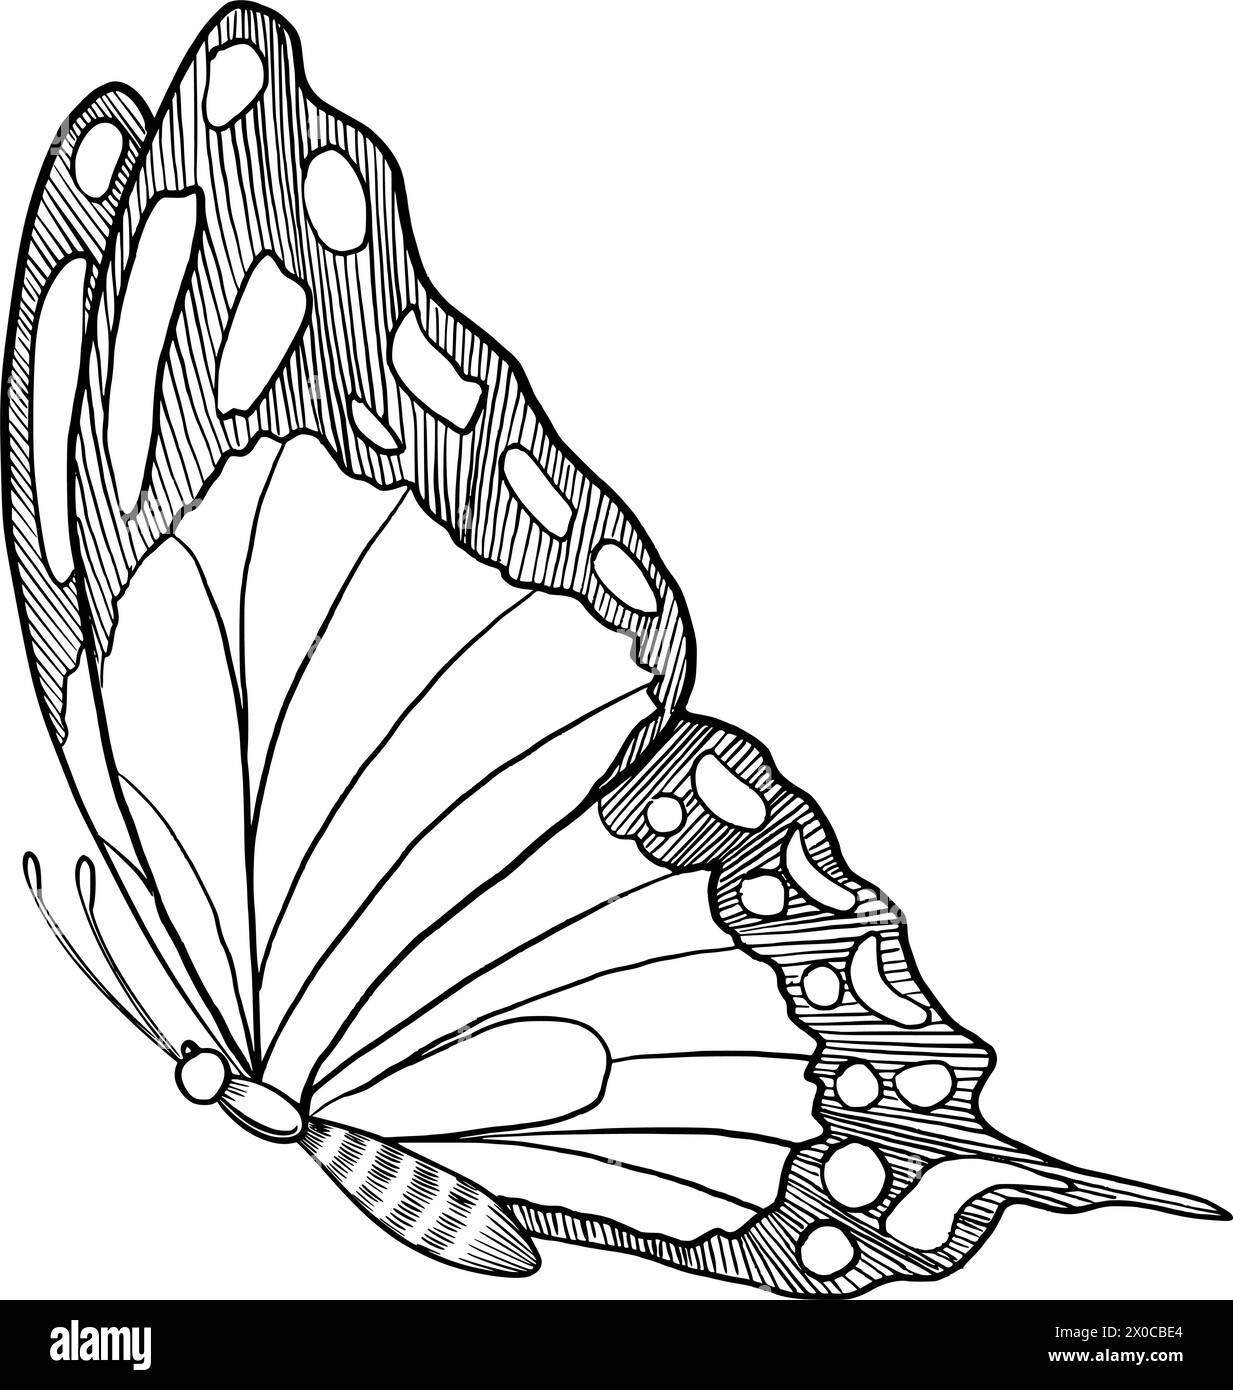 Illustration vectorielle papillon Machaon. Dessin d'insecte avec des ailes peintes à l'encre noire. Croquis dessiné à la main de papillon volant pour des invitations de mariage ou des cartes postales. Gravure vintage pour icône ou logo. Illustration de Vecteur